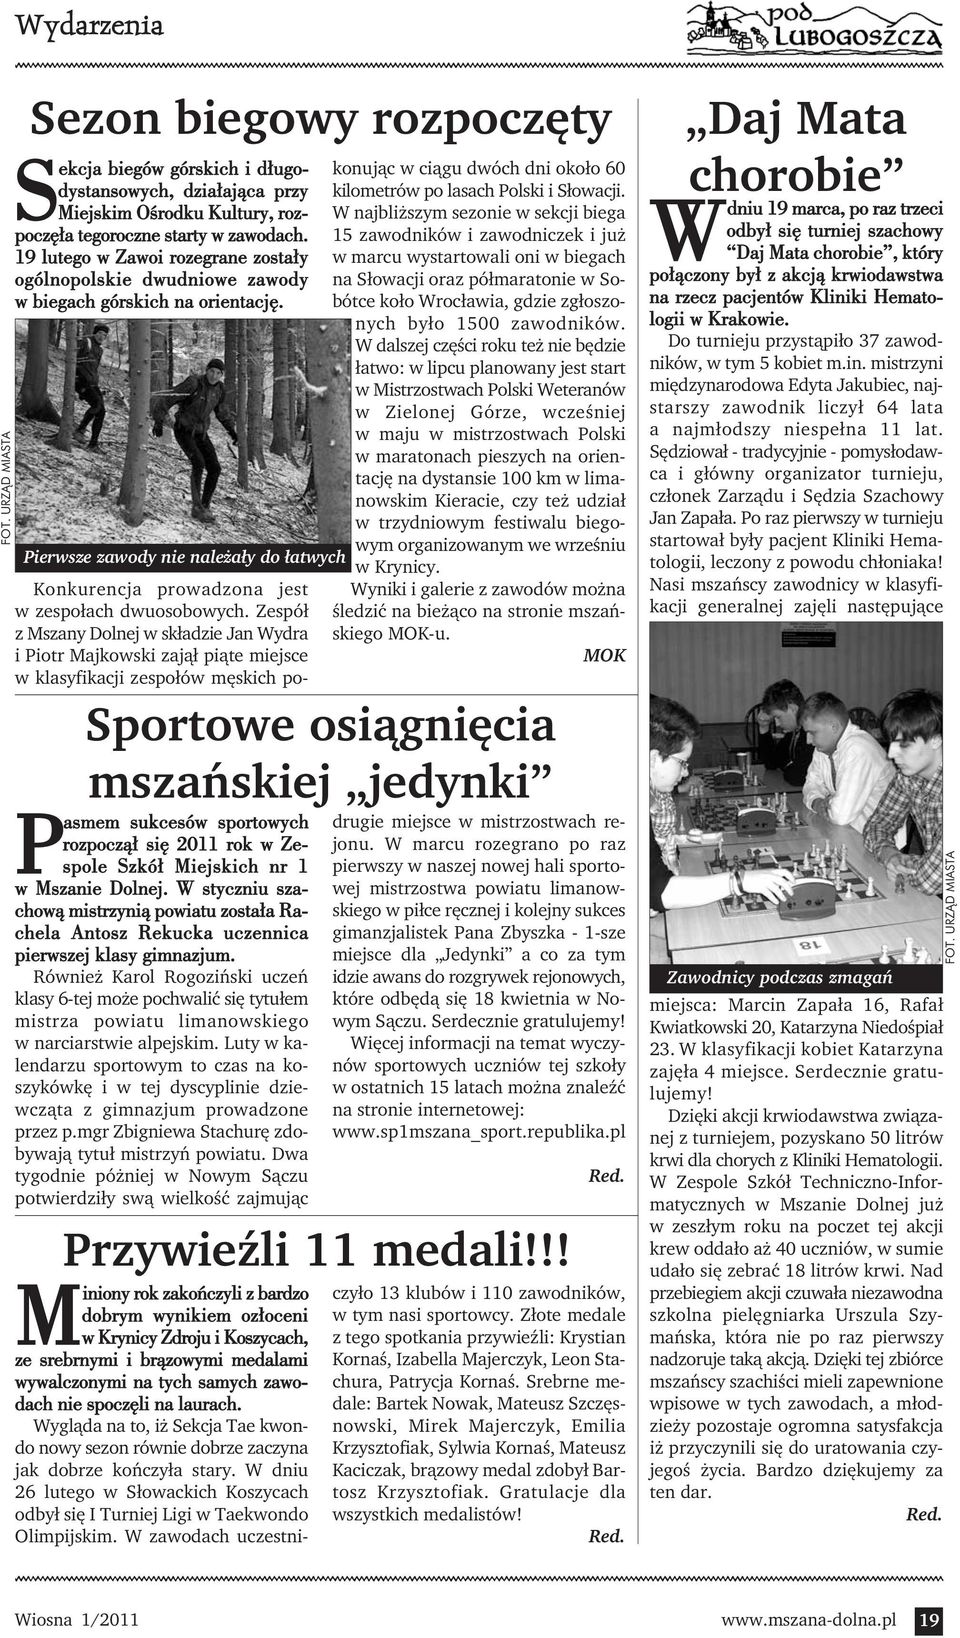 Zespół z Mszany Dolnej w składzie Jan Wydra i Piotr Majkowski zajął piąte miejsce w klasyfikacji zespołów męskich pokonując w ciągu dwóch dni około 60 kilometrów po lasach Polski i Słowacji.